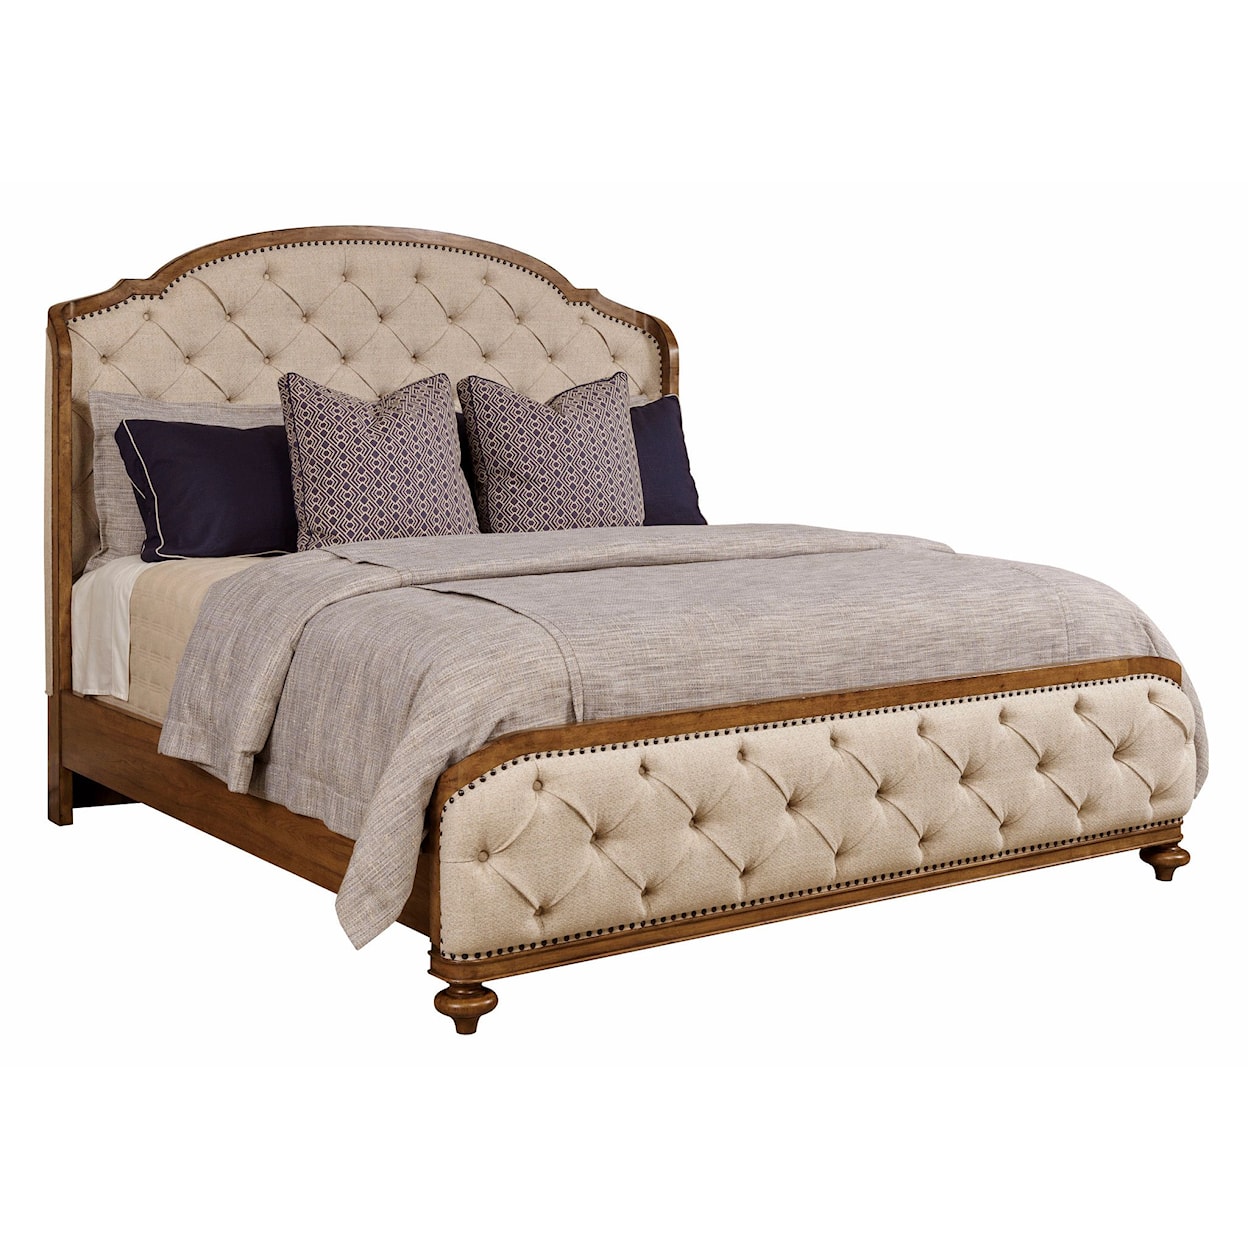 American Drew Berkshire Queen Upholstered Bed